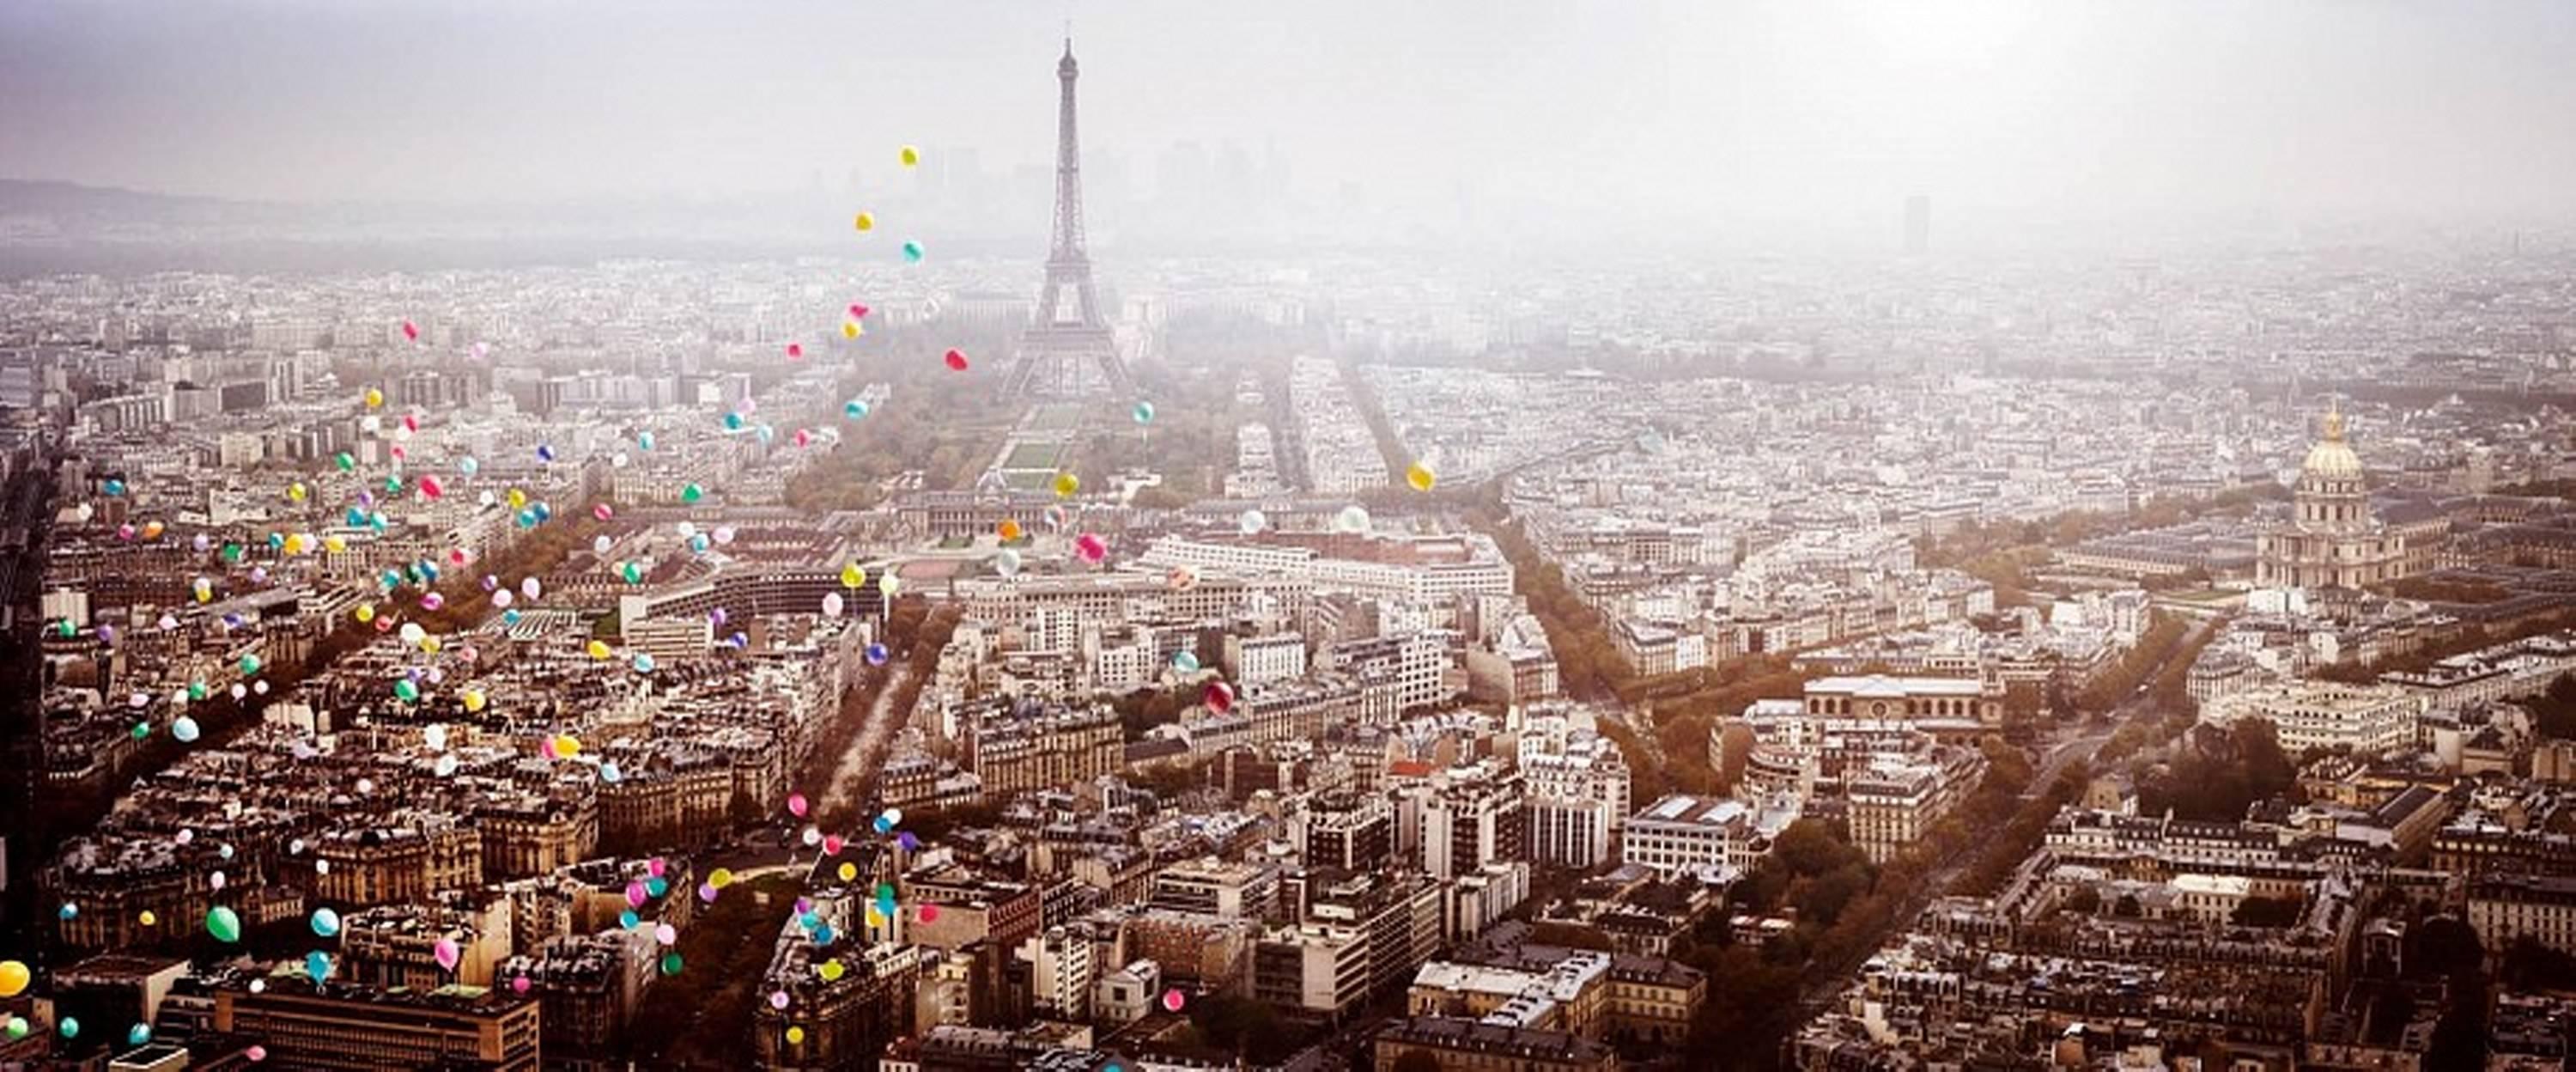 Color Photograph David Drebin - Ballons au-dessus de Paris (France) - vue aérienne de Paris avec ballons de la Tour Eiffel 